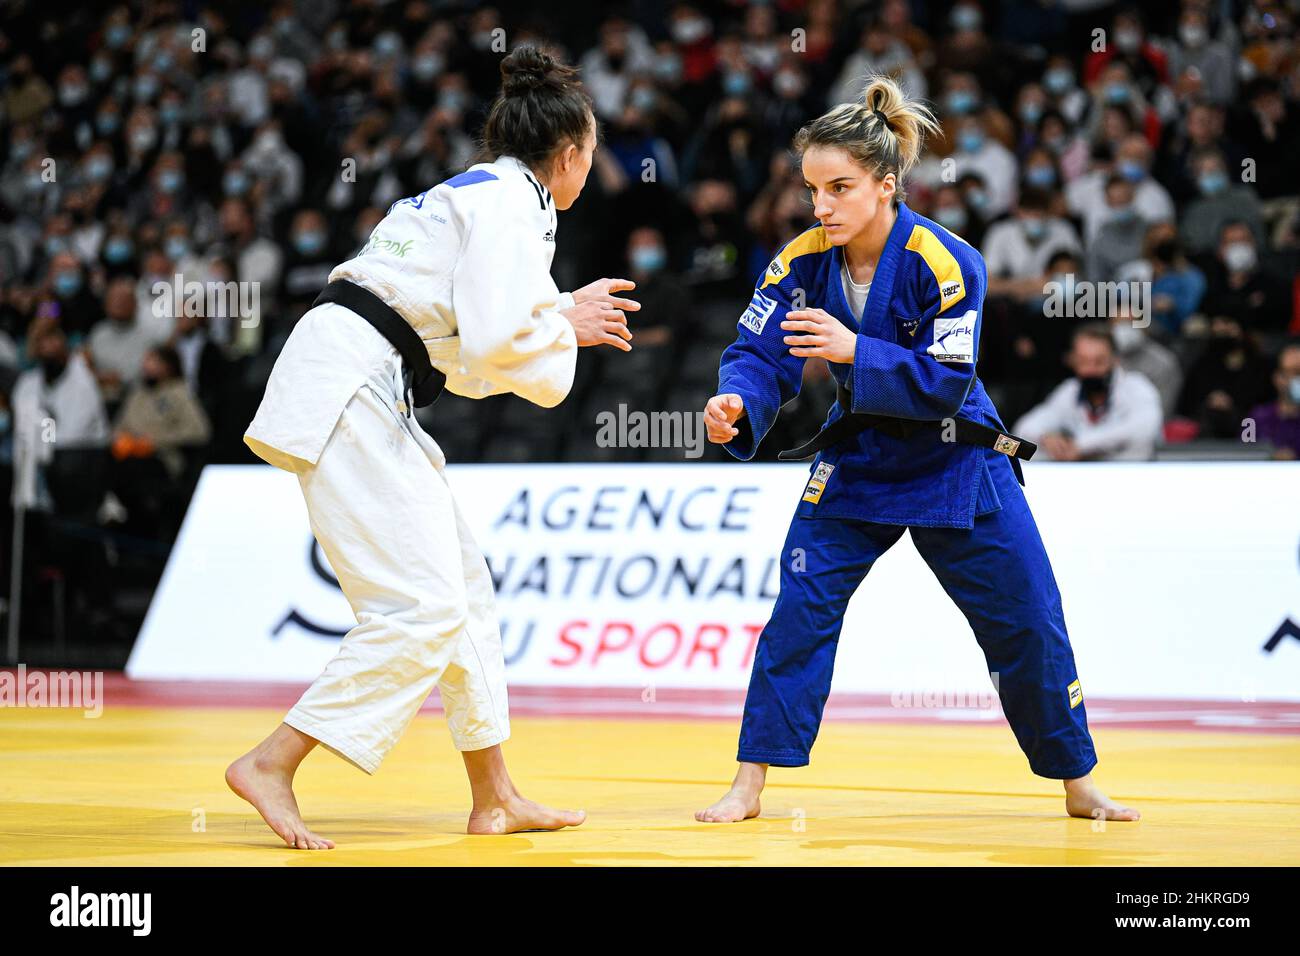 -52 kg de femmes, Distria Krasniqi du Kosovo participe à la tournée mondiale du judo de Paris Grand Chelem 2022, IJF le 5 février 2022 à l'Accor Arena de Paris, France - photo Victor Joly / DPPI Banque D'Images